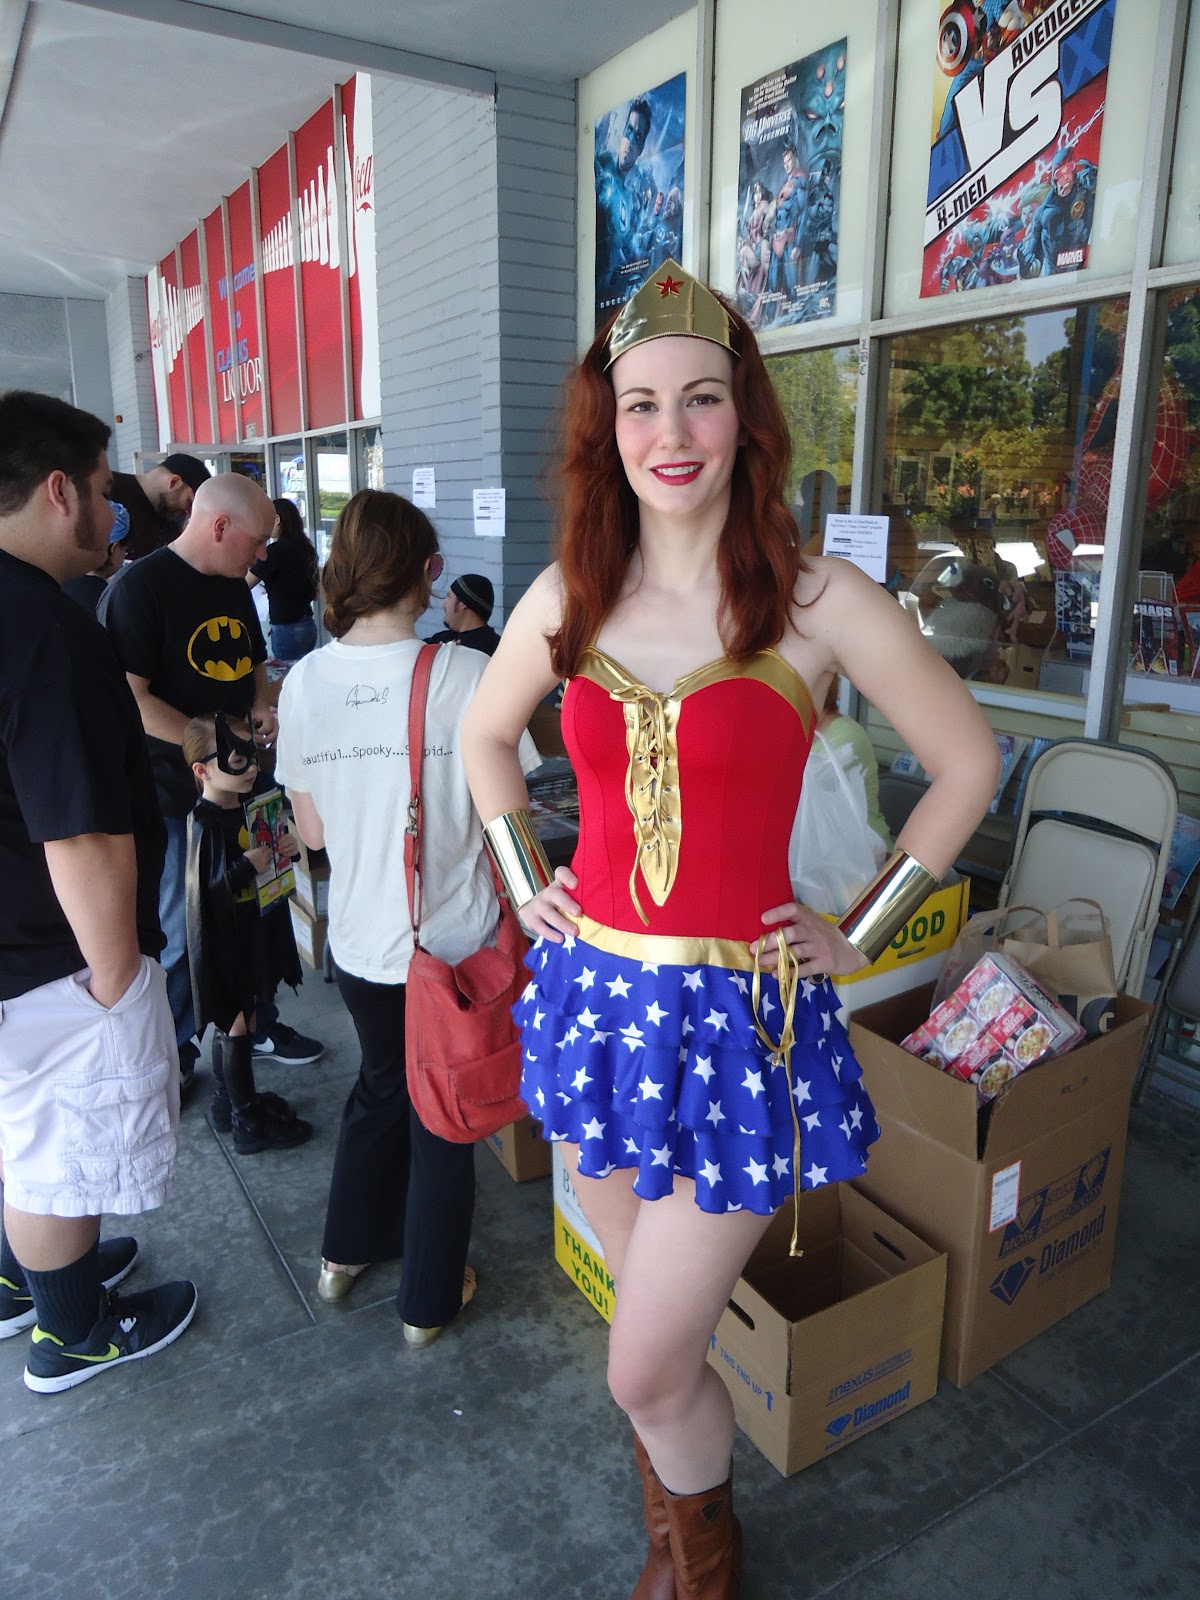 Kat Sheridan, Actress: Red-haired Wonder Woman?